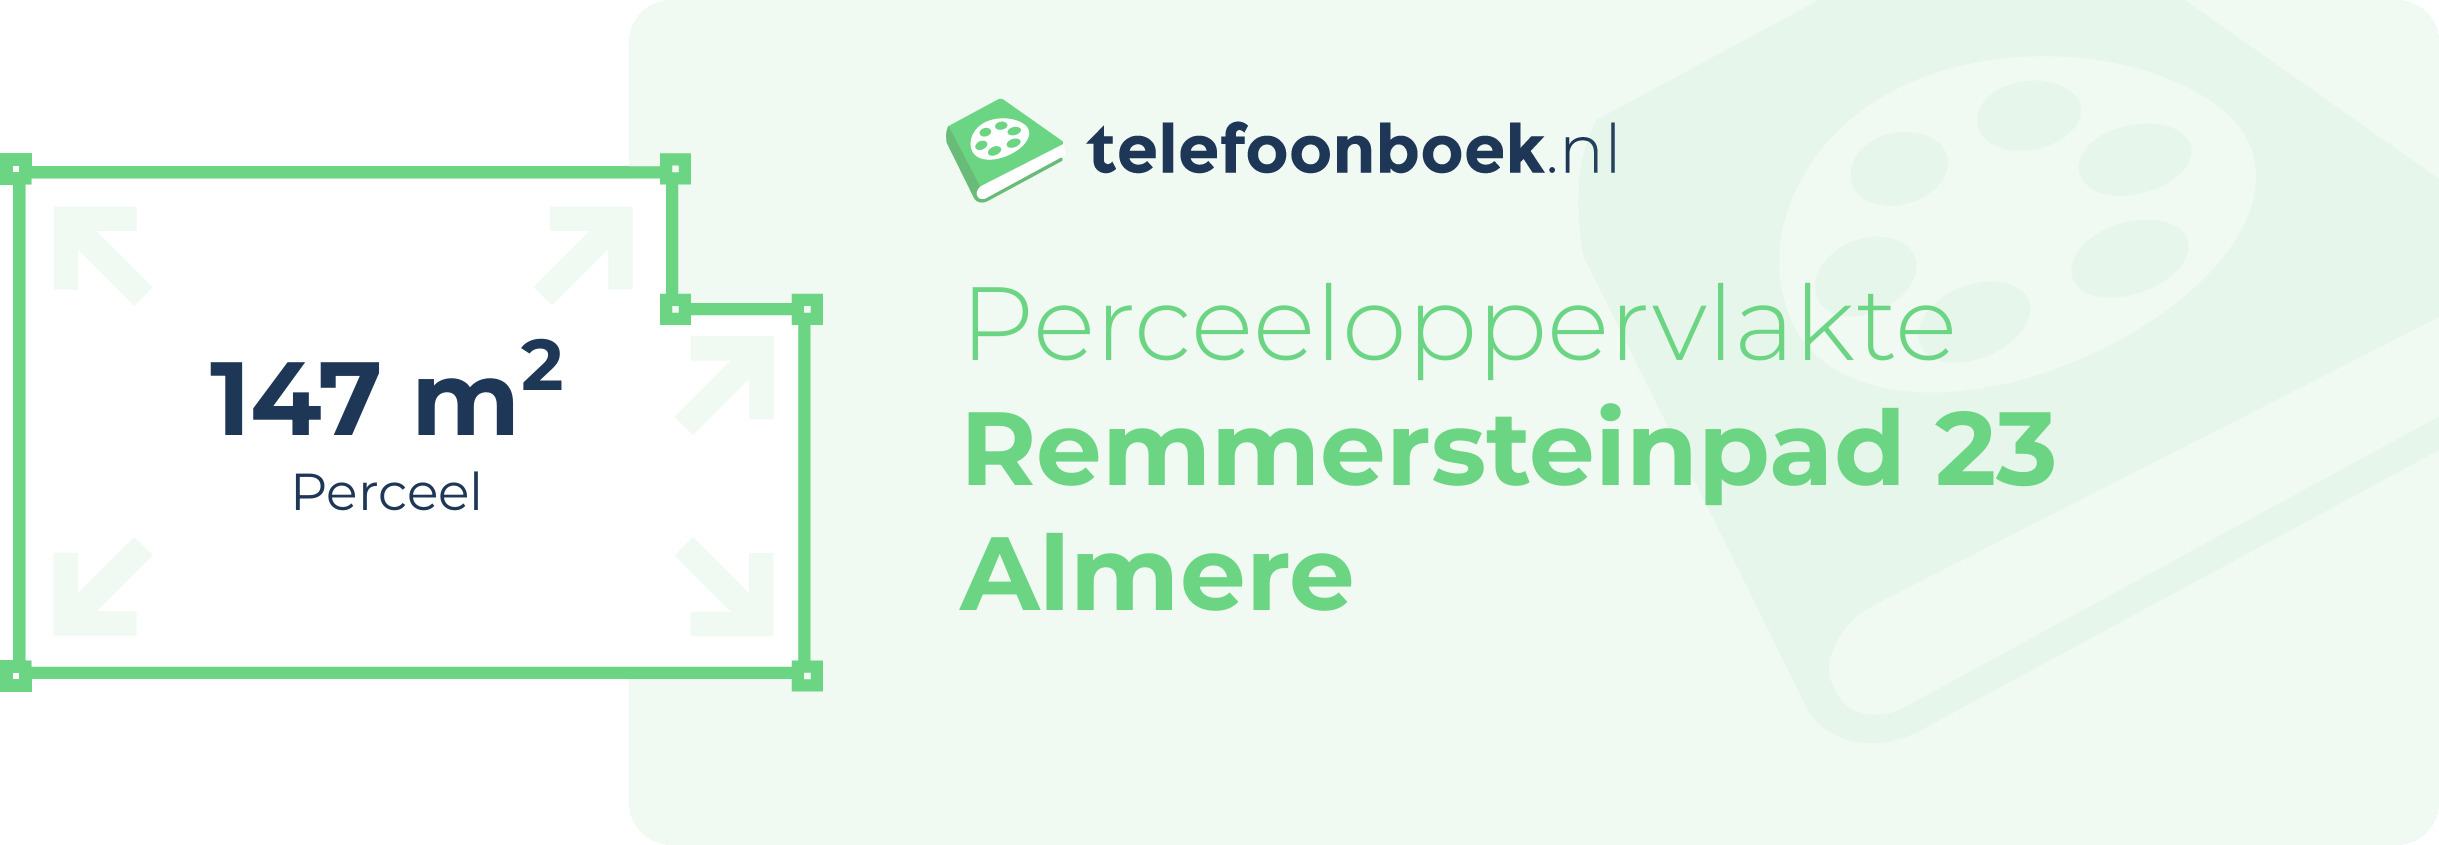 Perceeloppervlakte Remmersteinpad 23 Almere